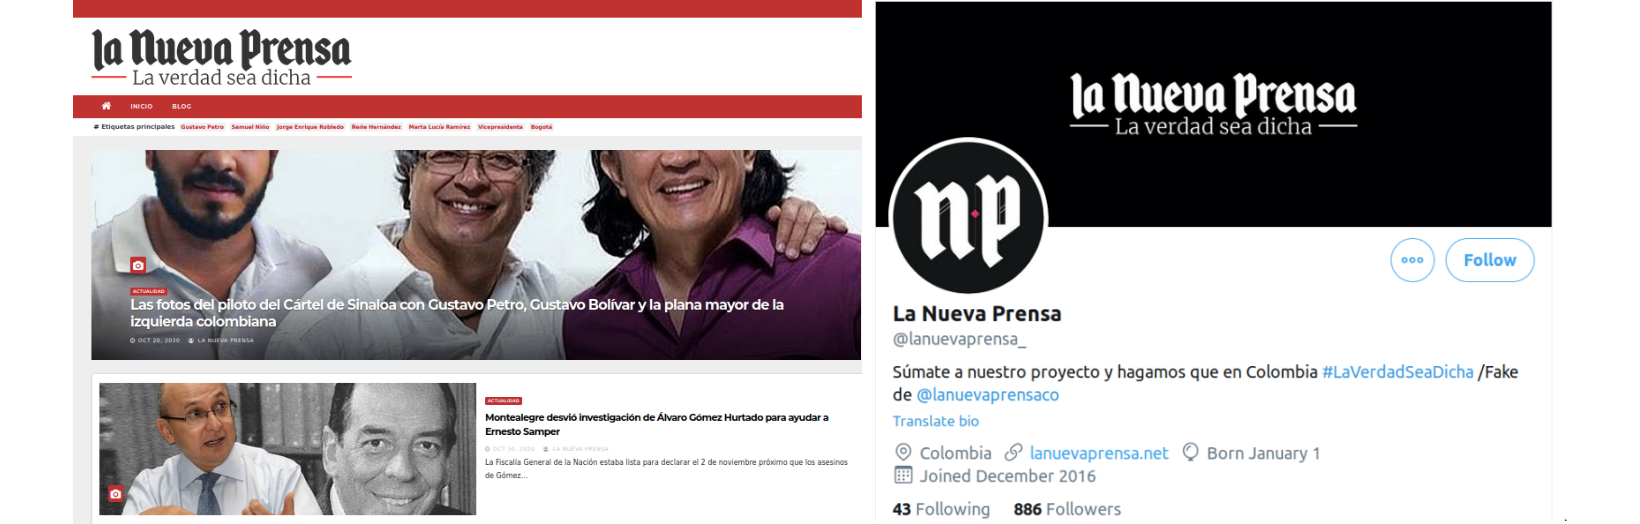 Imagen 1: Sitio clon de La Nueva Prensa / Imagen 2: Cuenta falsa de Twitter de La Nueva Prensa